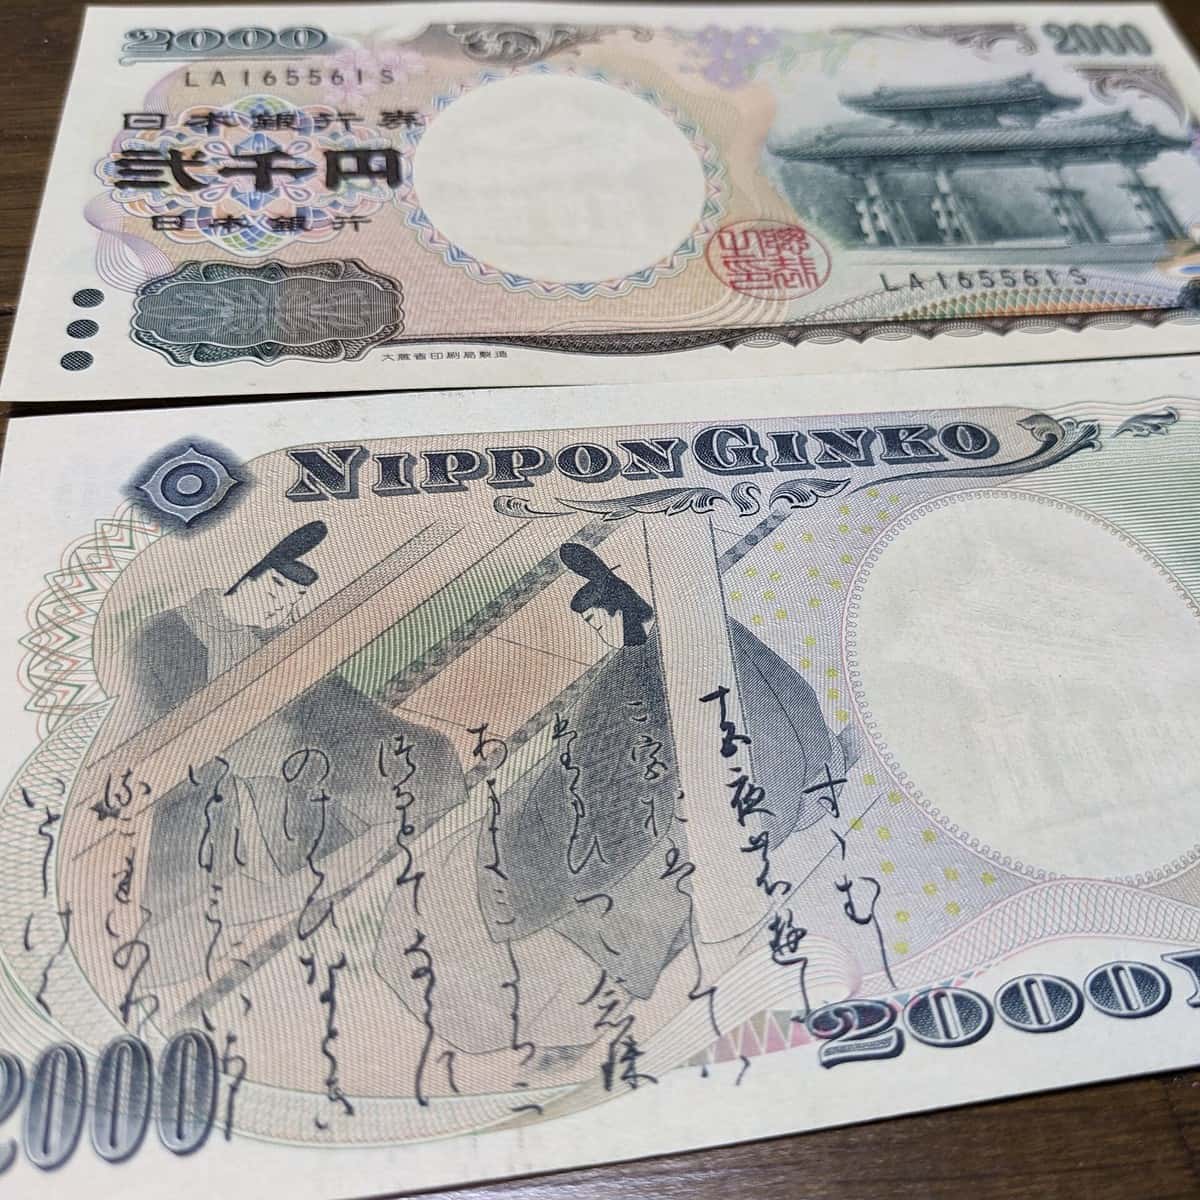 2000 yen note